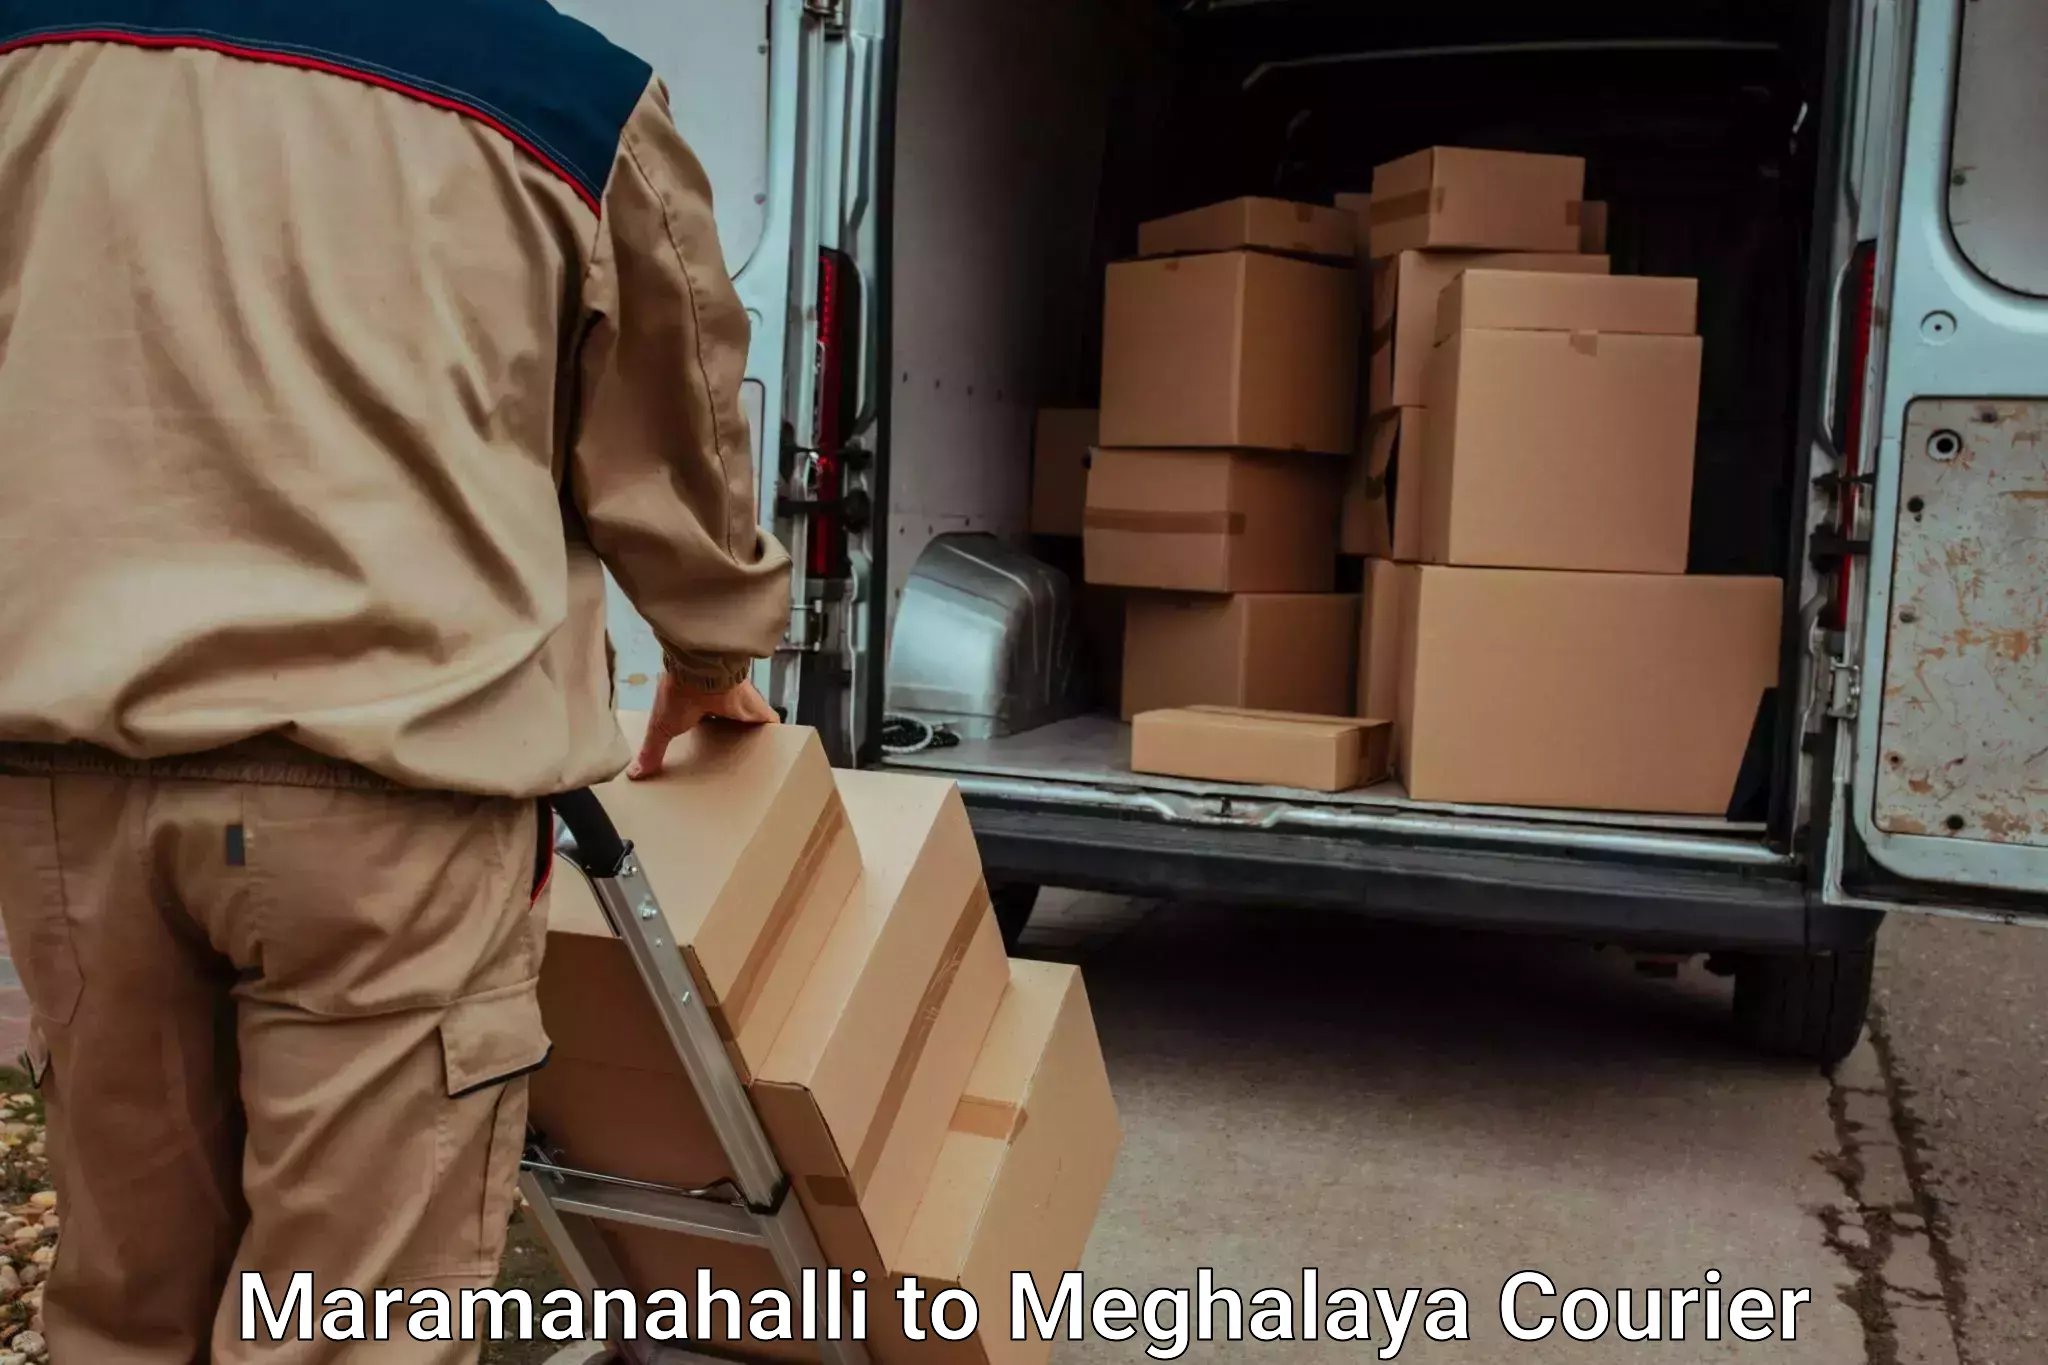 Baggage shipping experts Maramanahalli to NIT Meghalaya